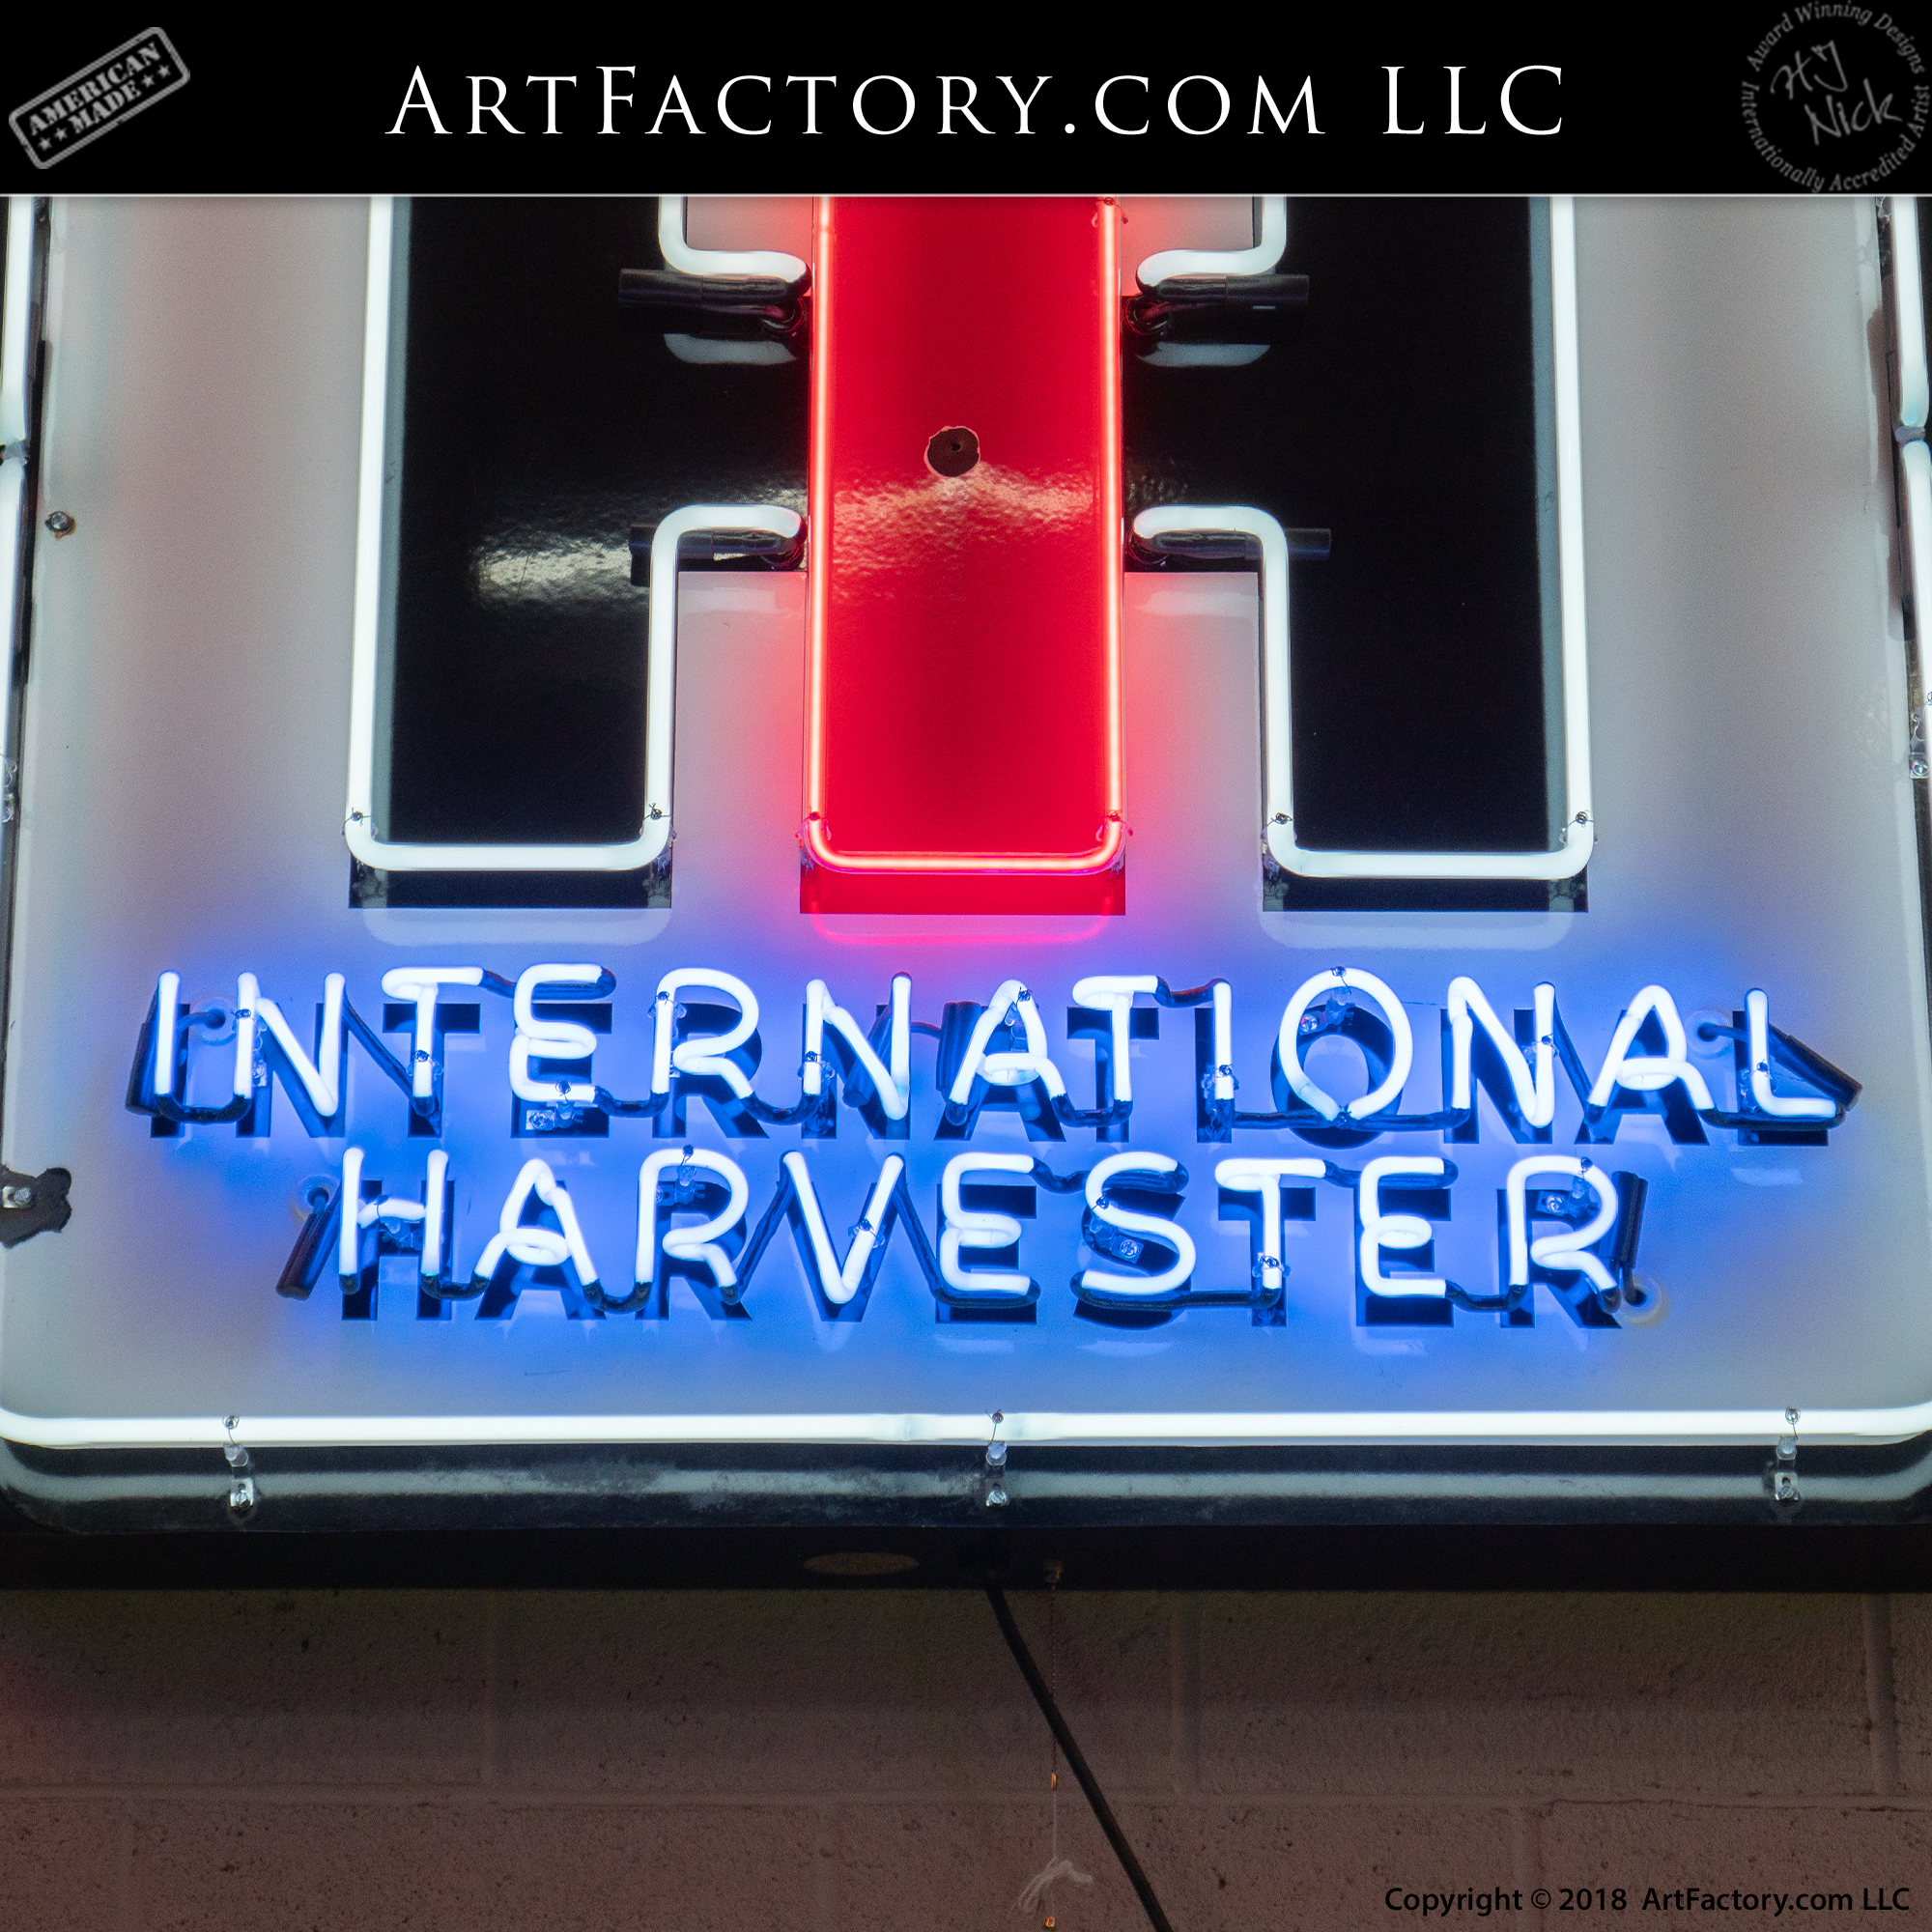 Vintage International Harvester Neon Sign